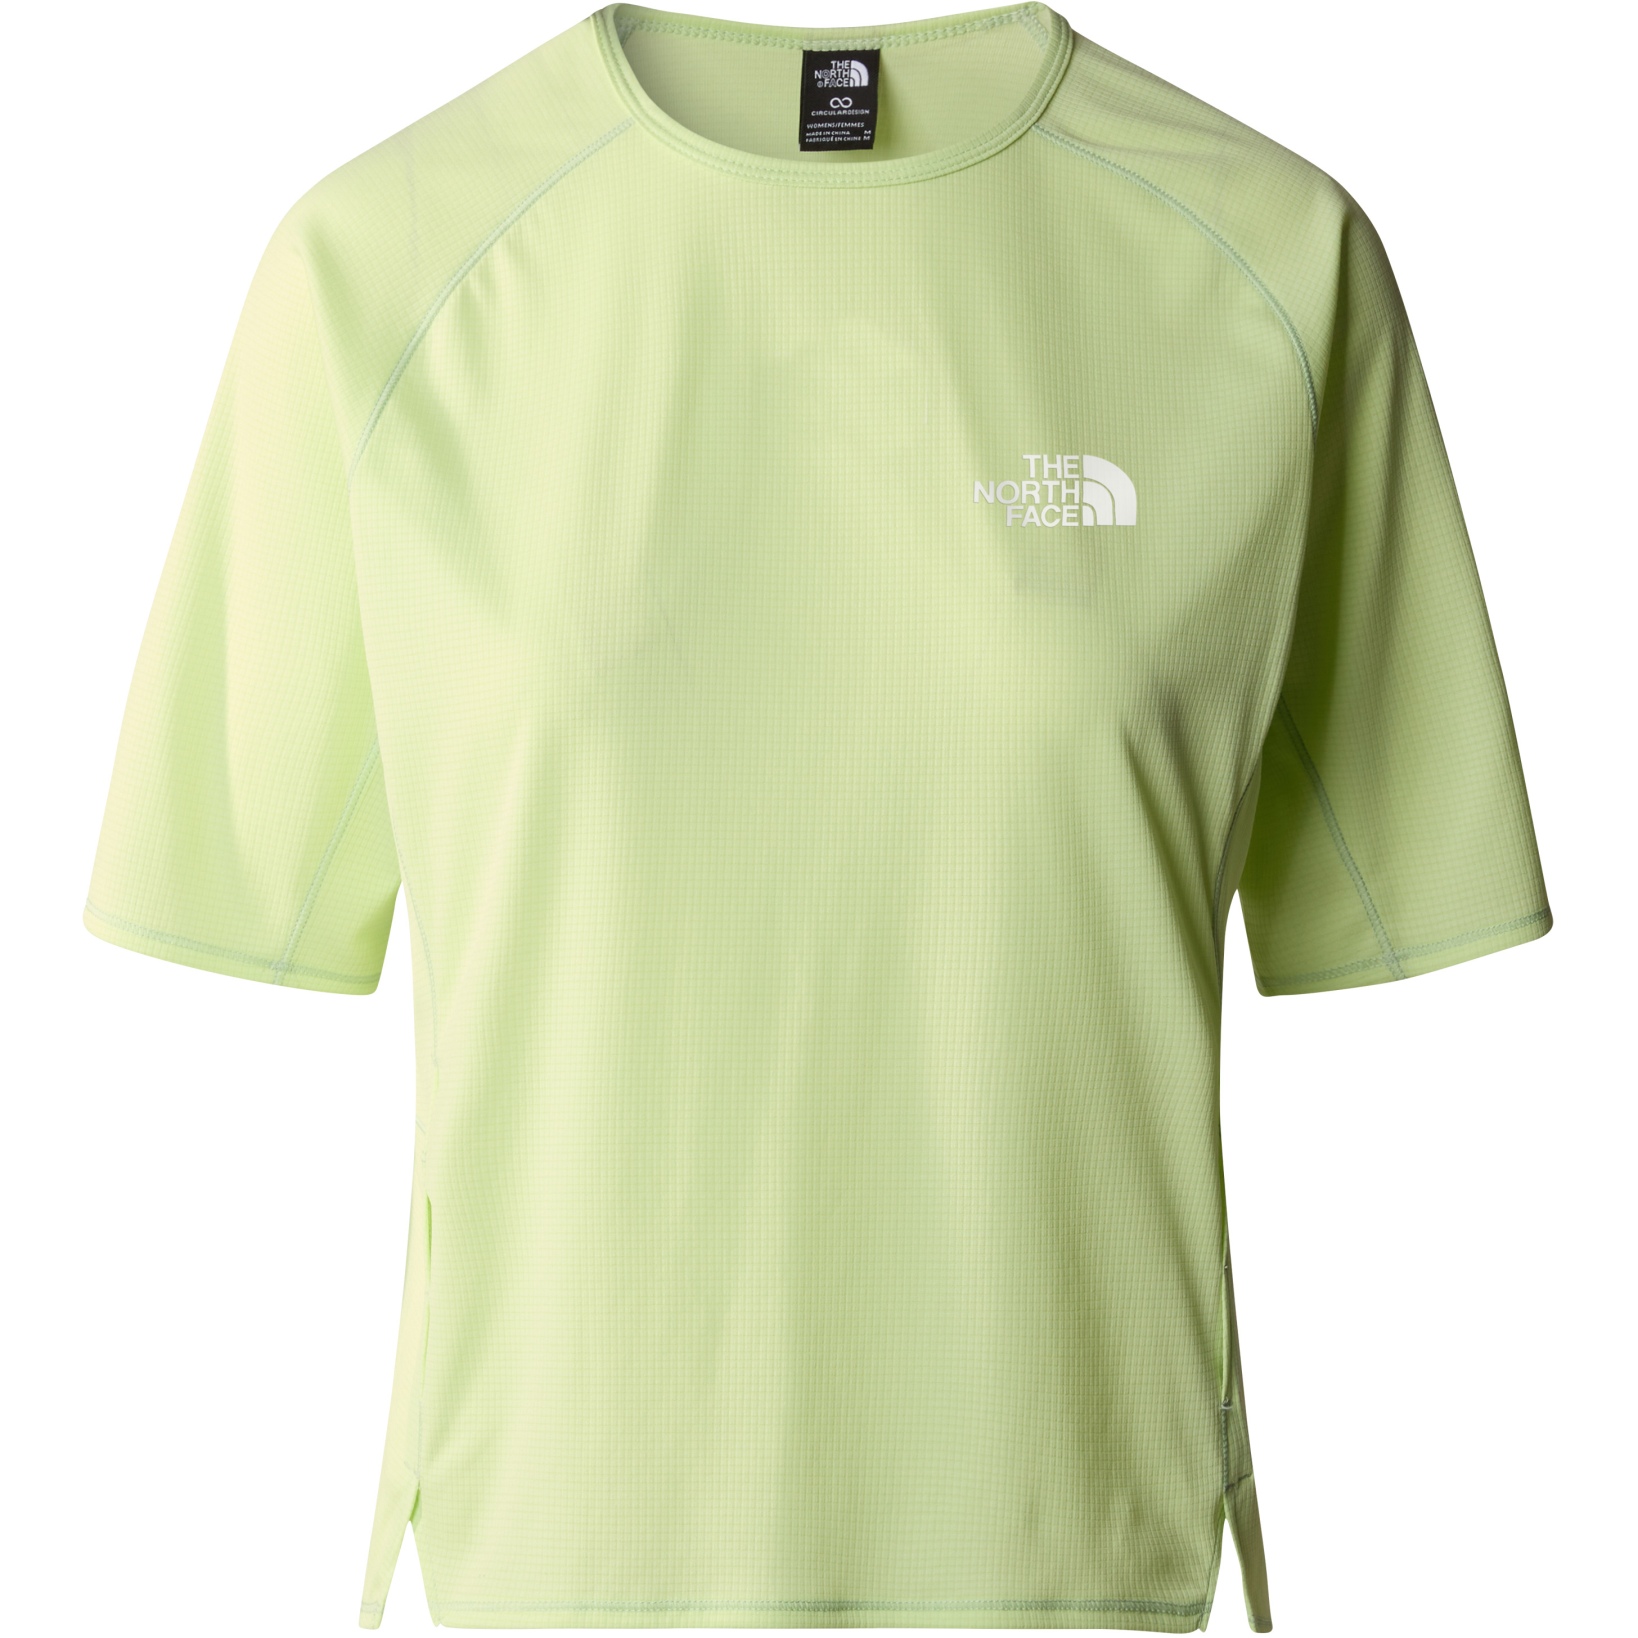 Produktbild von The North Face Summer LT T-Shirt Damen - Astro Lime/Misty Sage